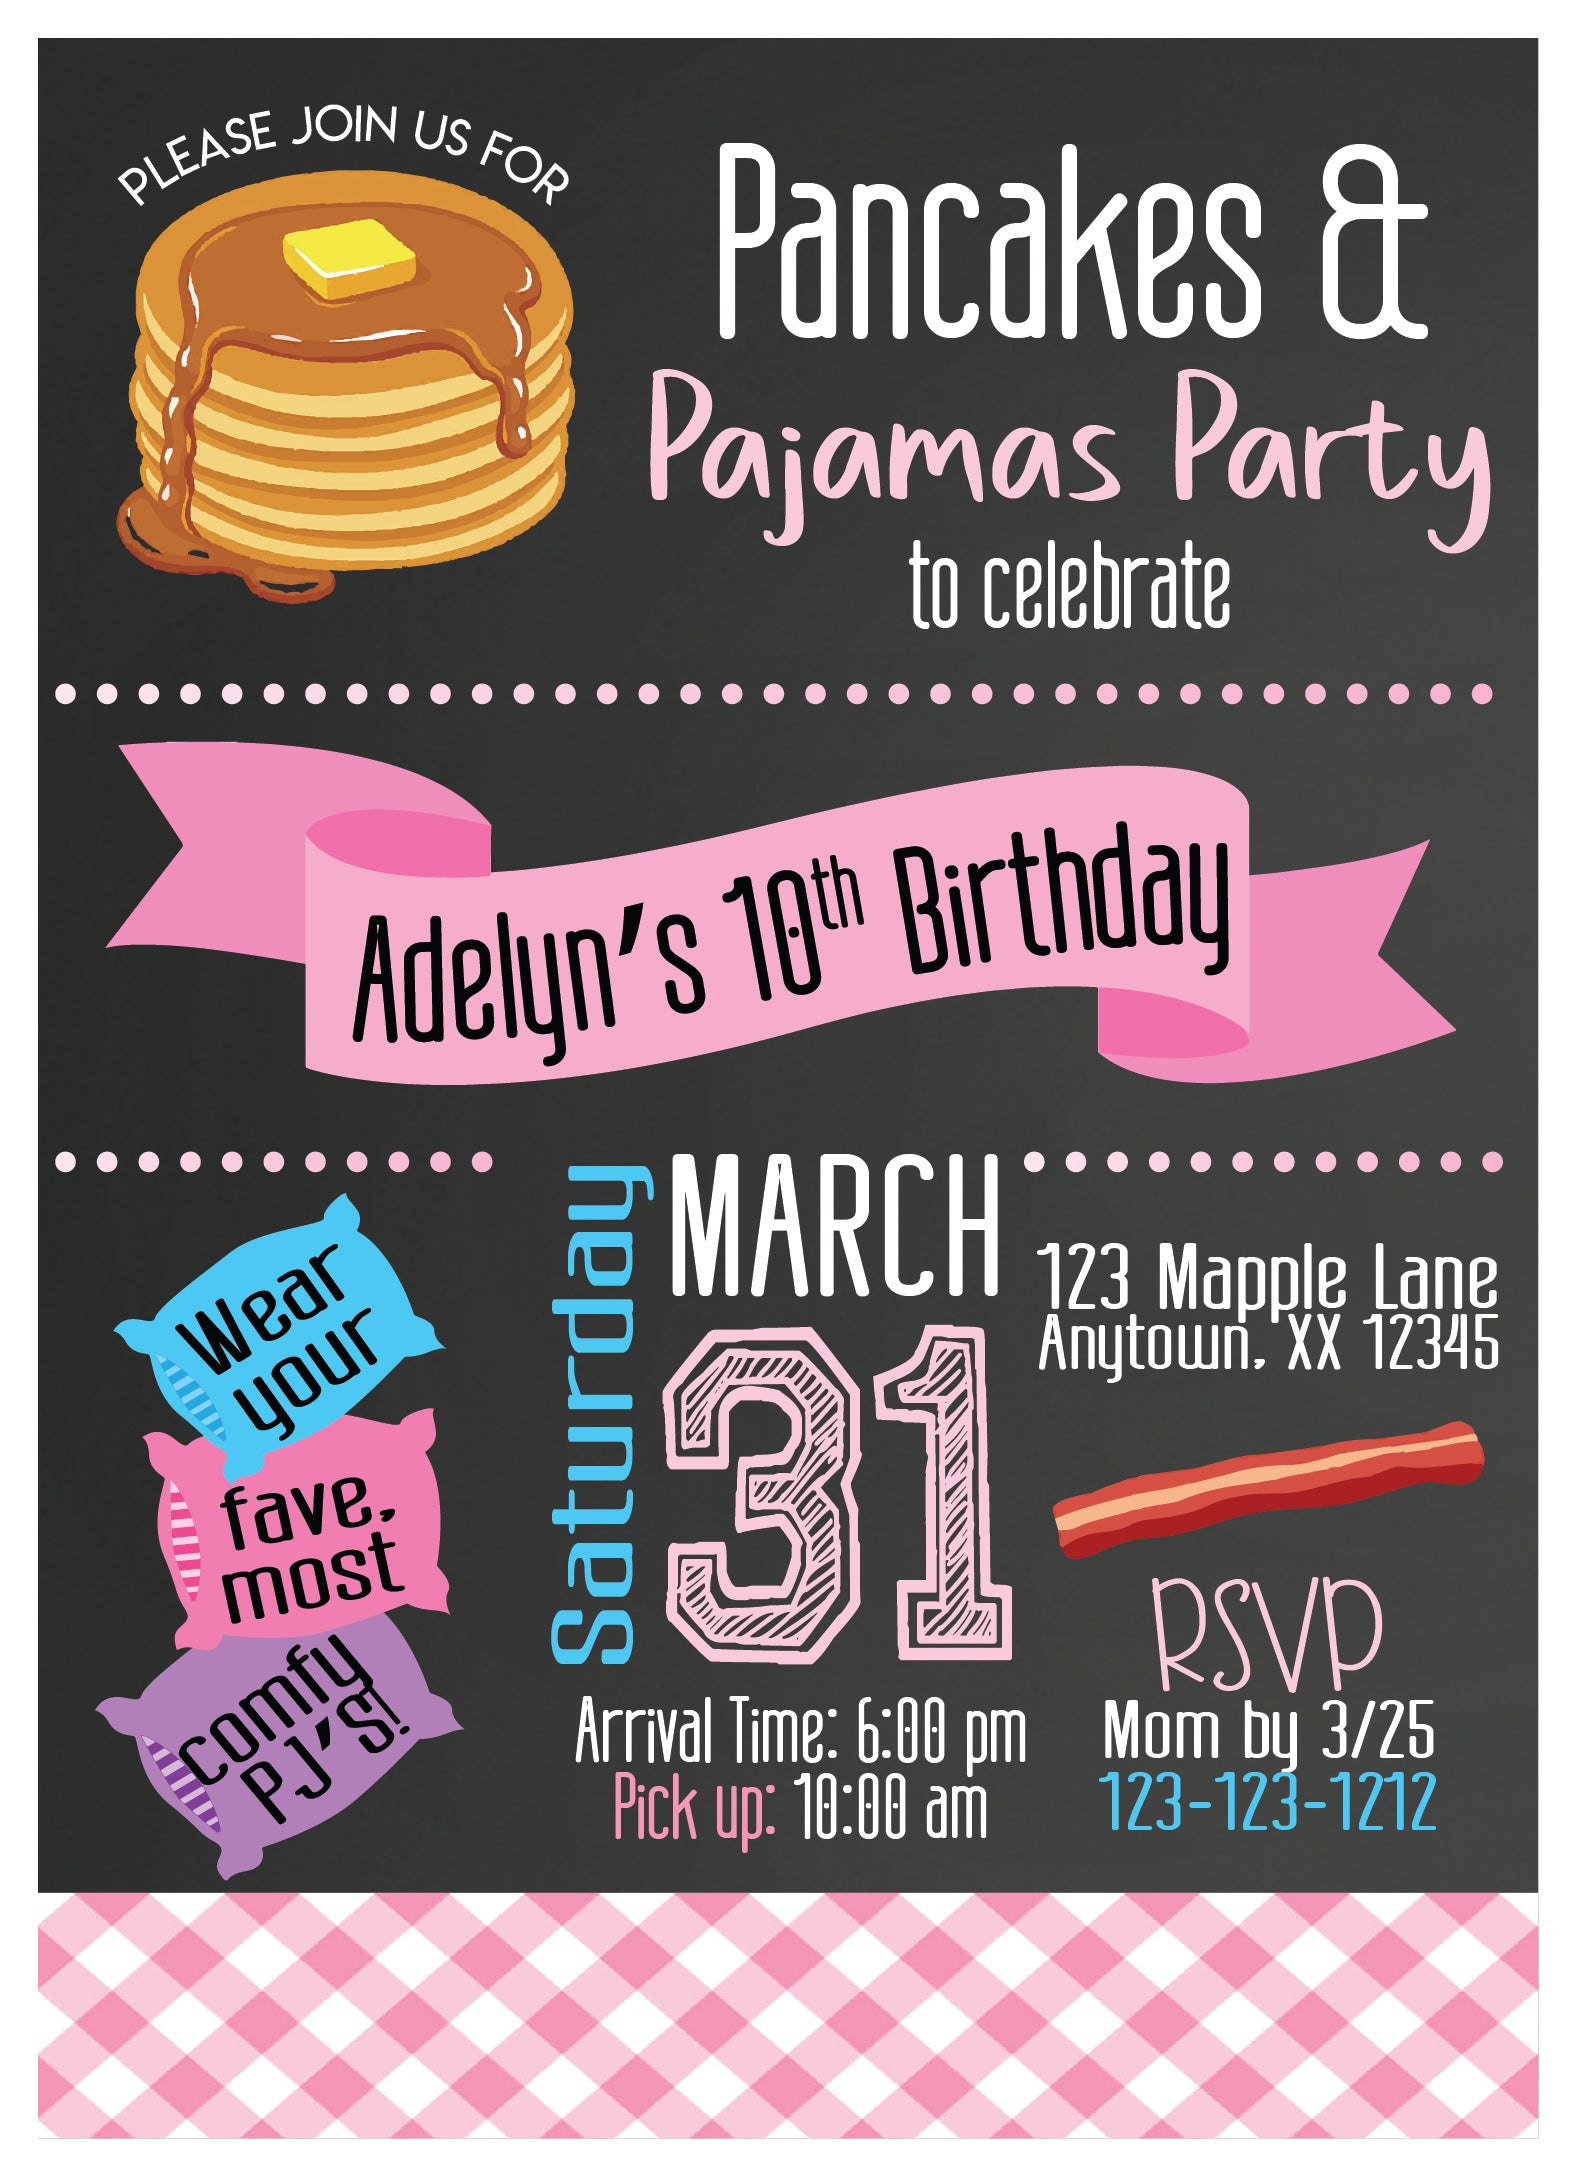 Pancakes and Pajamas Party Birthday Invitation, Digital File, Printable, Custom, Pancake Party Invite, Pajama Party, Sleepover Party